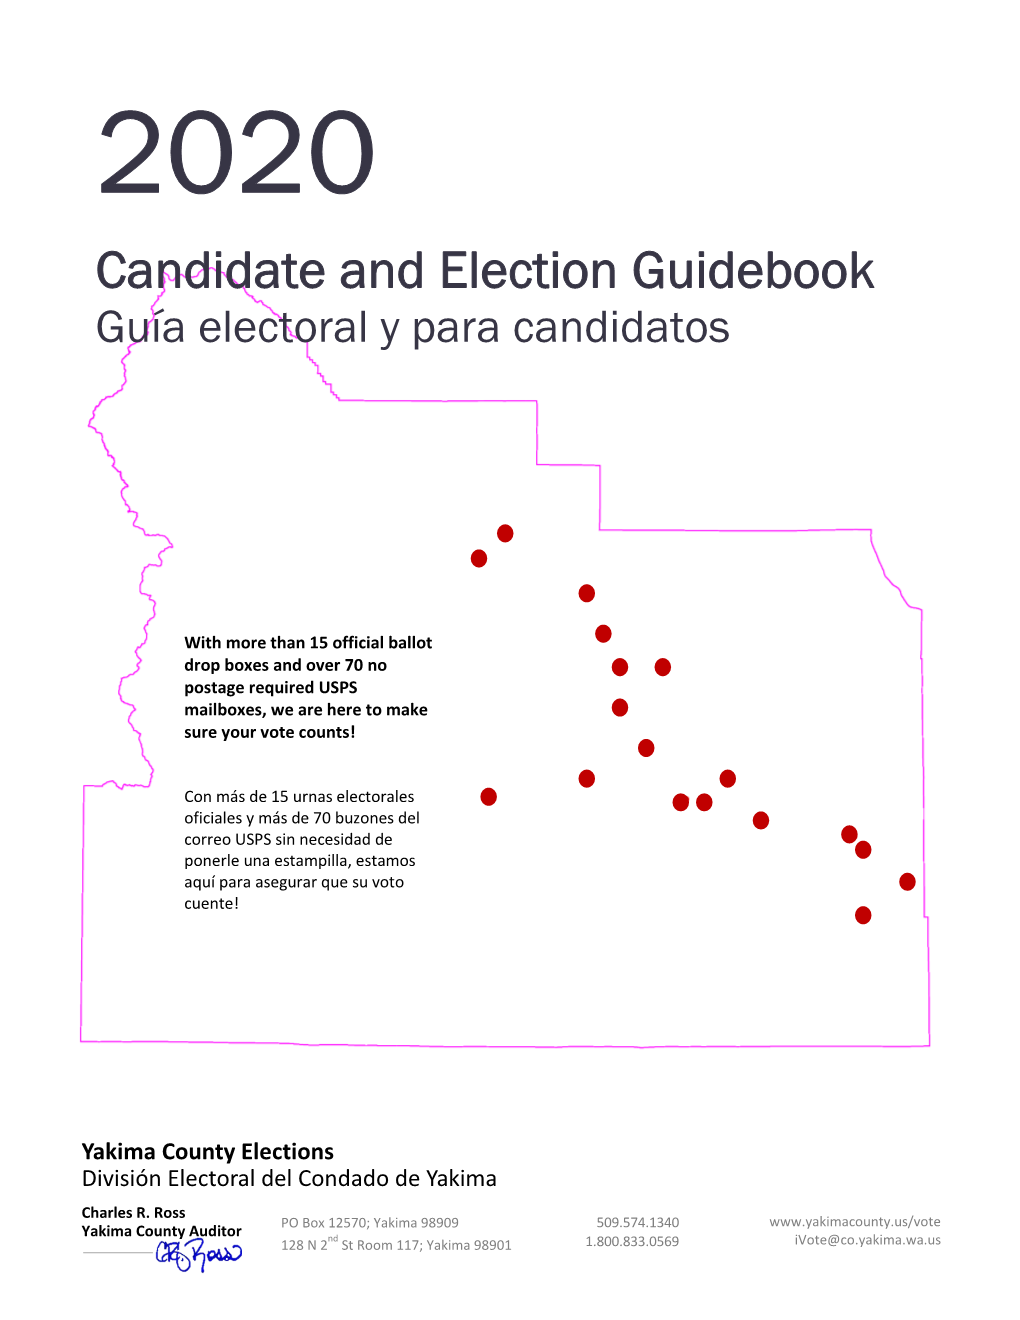 Candidate and Election Guidebook Guía Electoral Y Para Candidatos